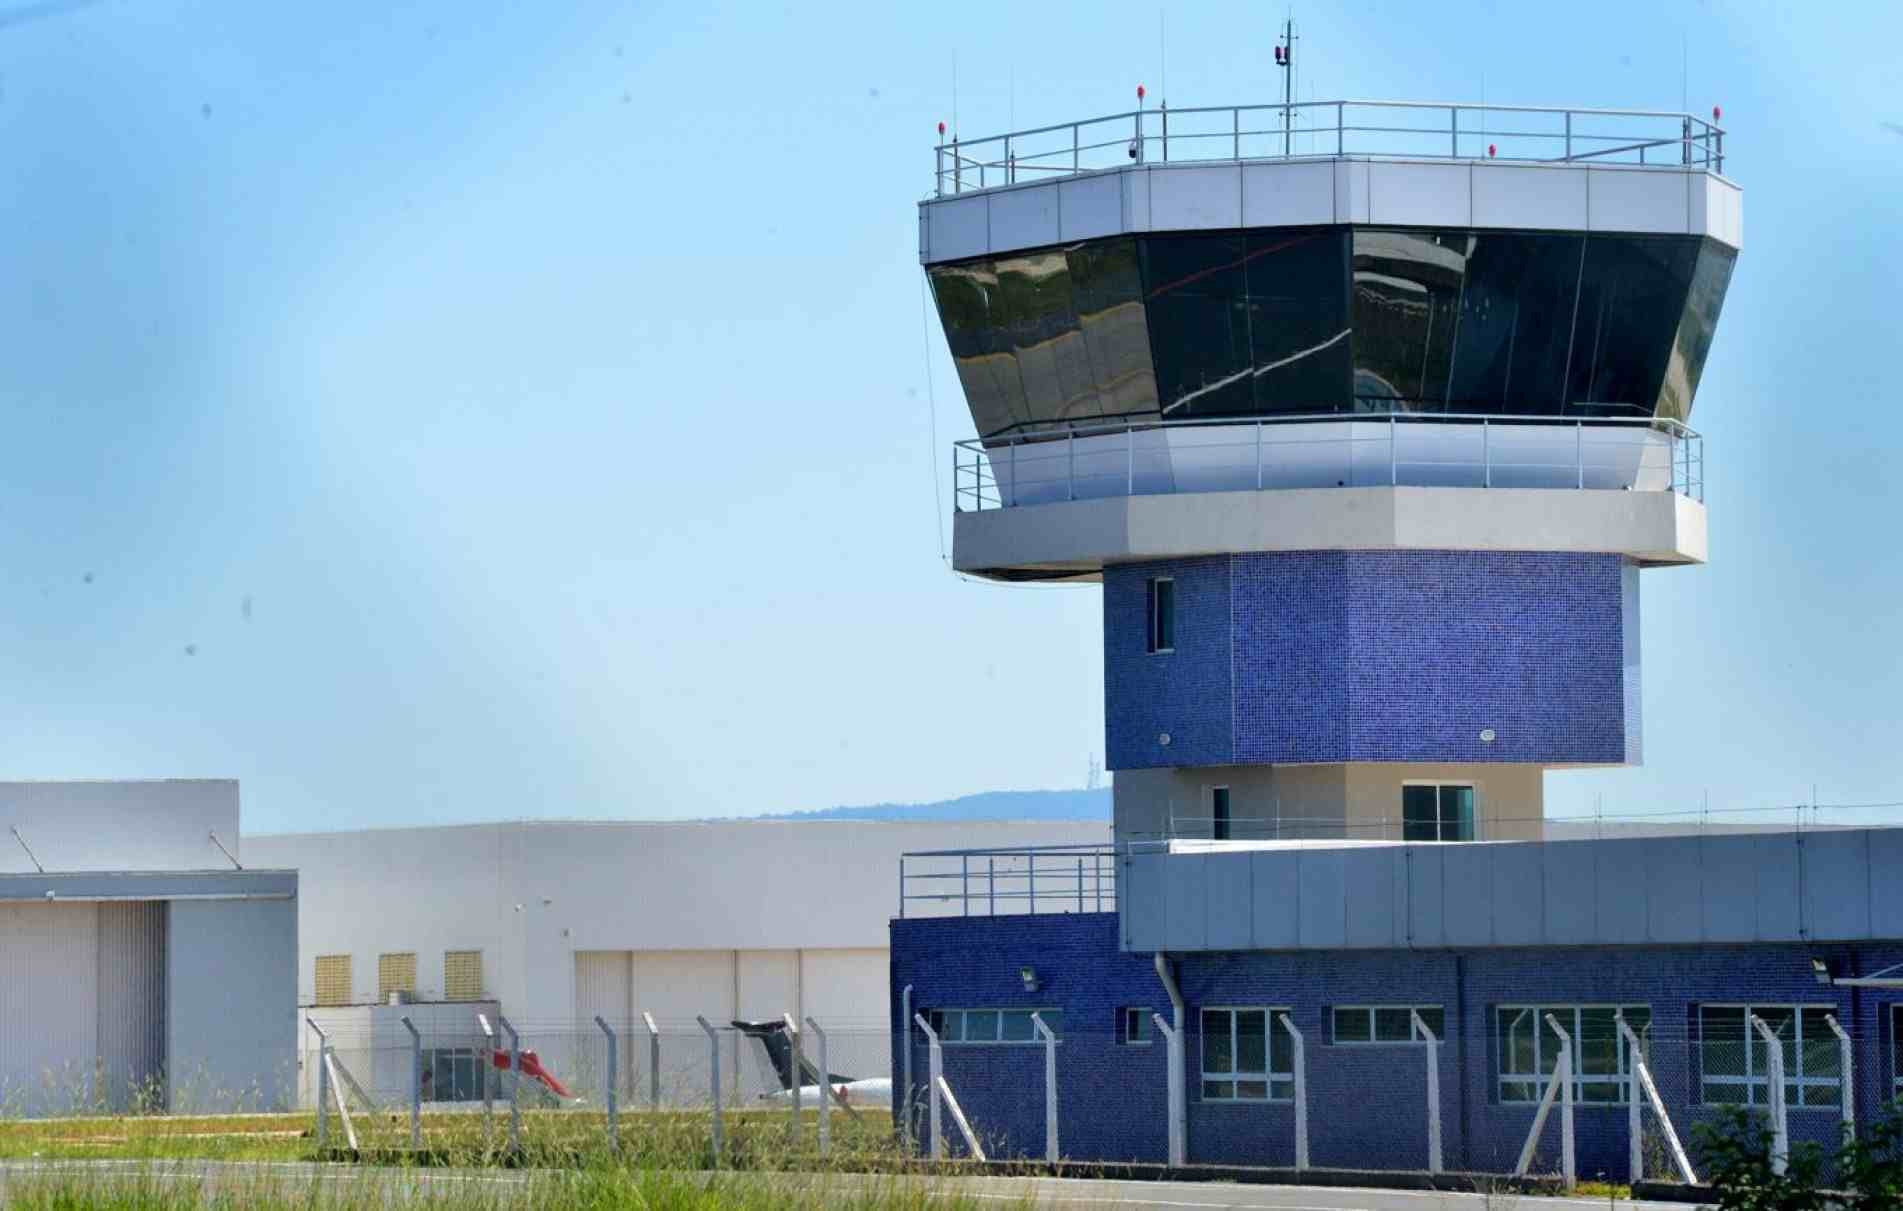 A torre de controle tem por função principal gerenciar o tráfego aéreo nas proximidades de um aeroporto.